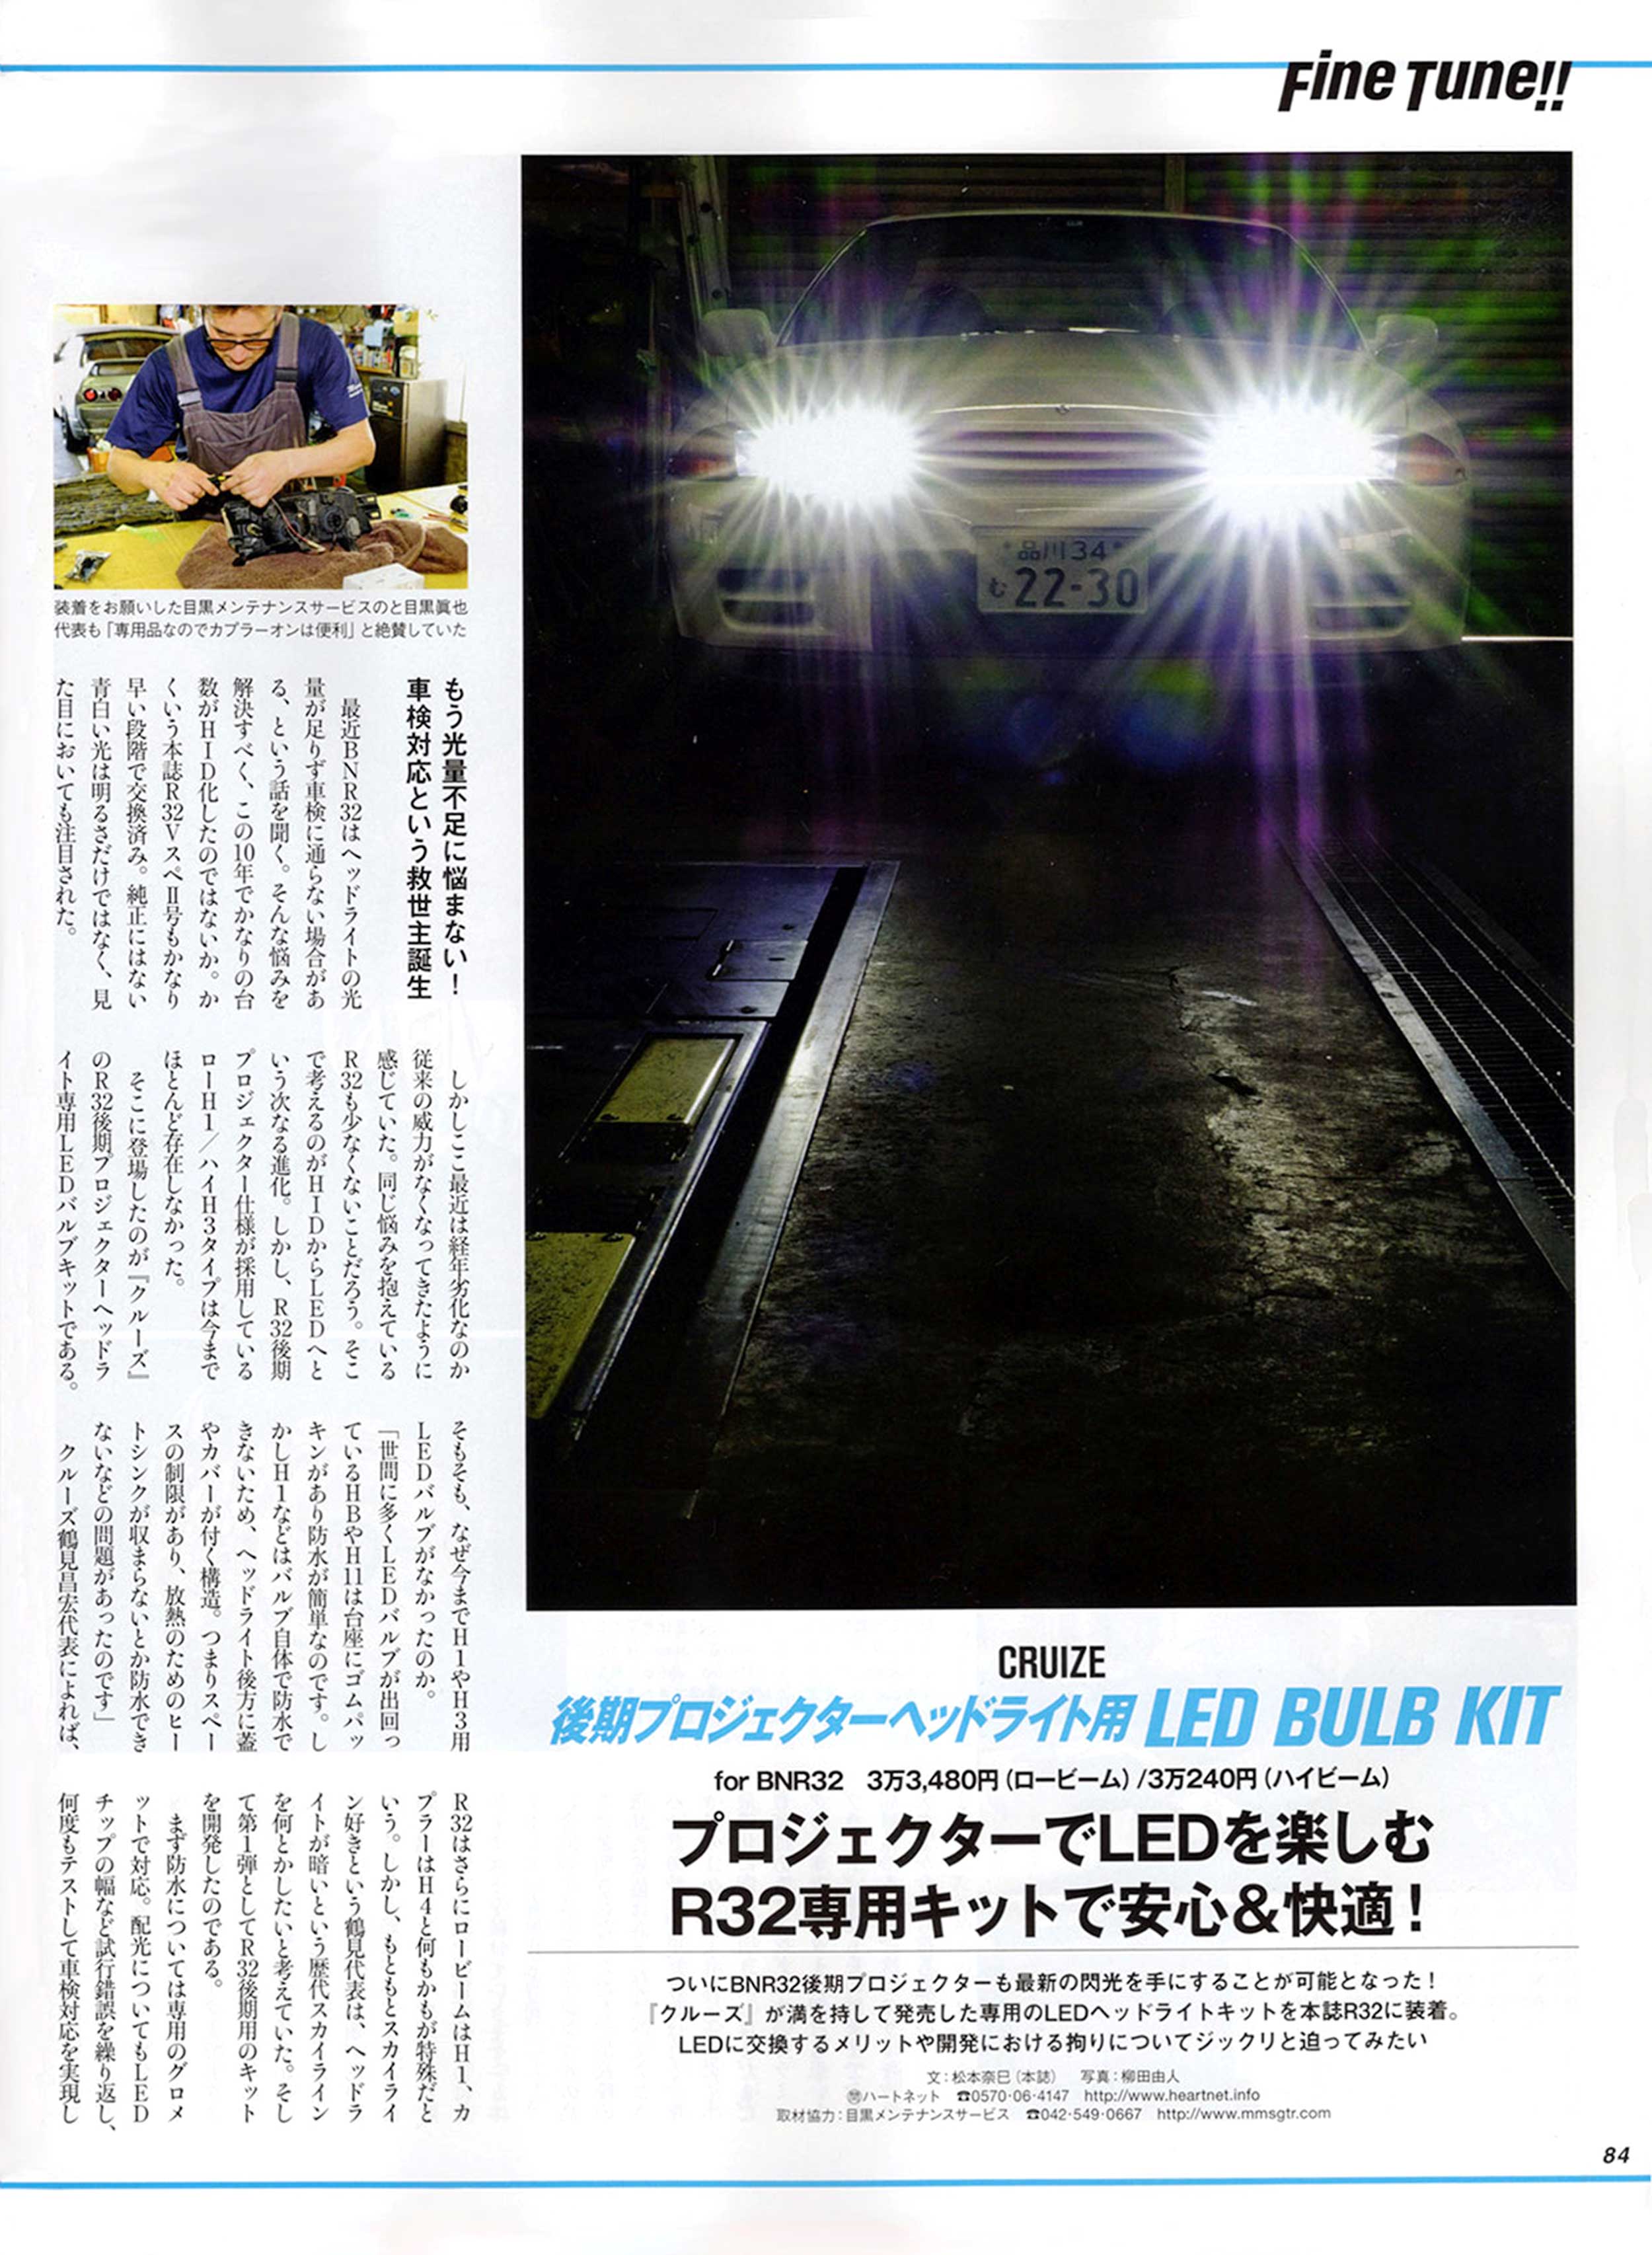 GT-R Magazine